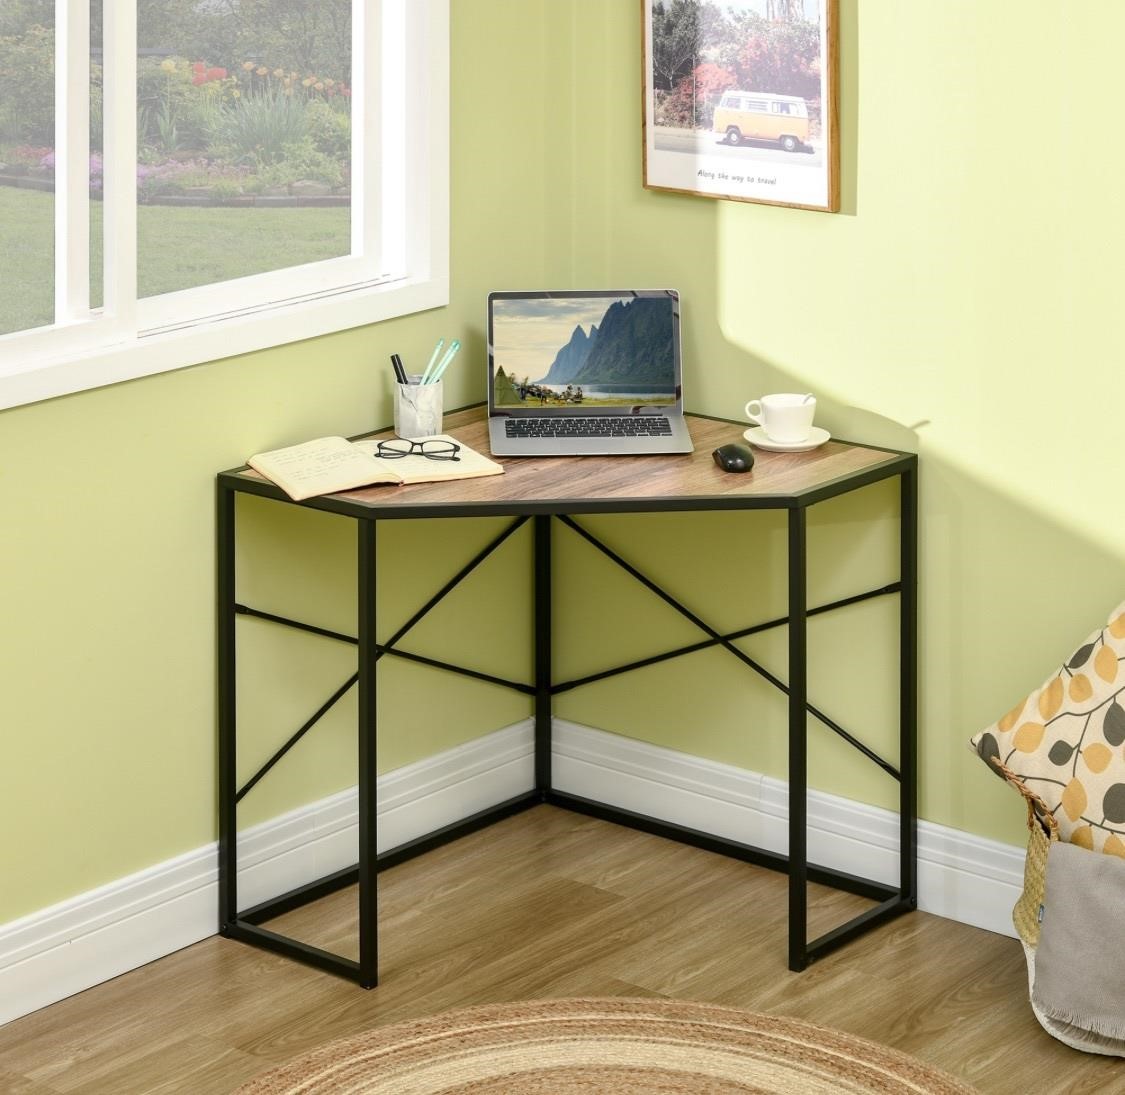 $100 Corner Desk for Small Spaces, Small